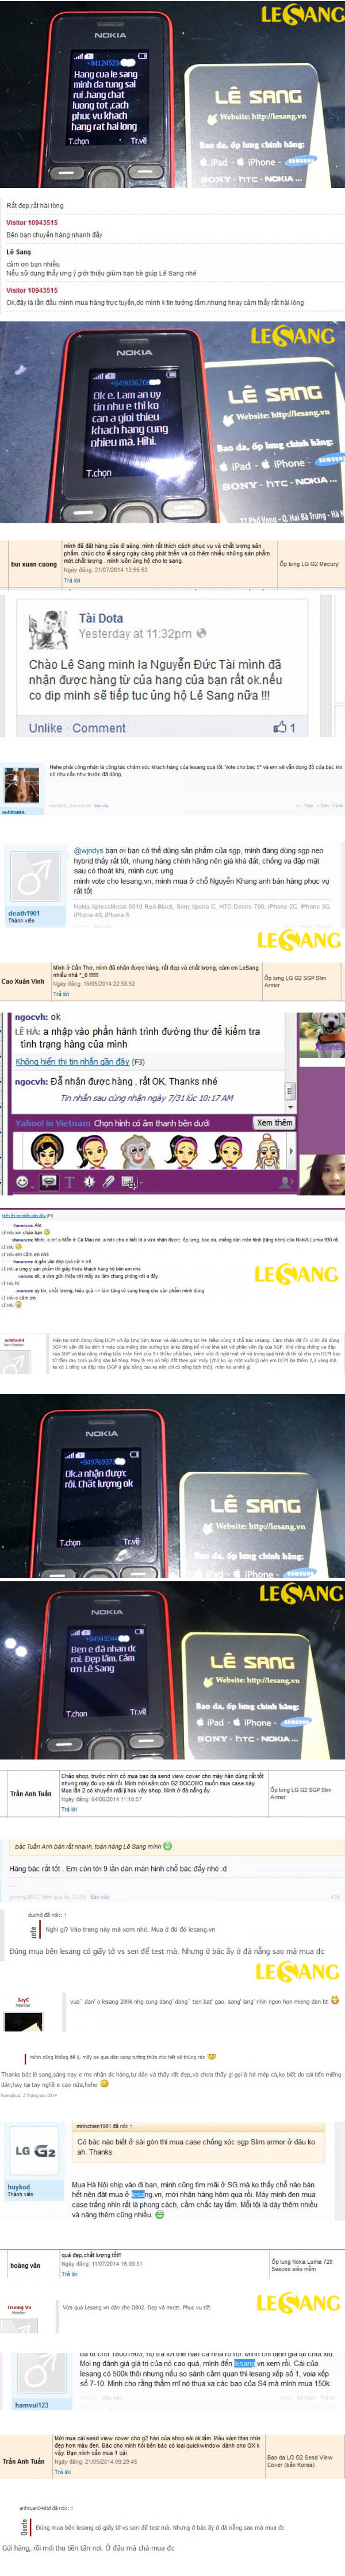 khách hàng online của Lê Sang, Lê Sang Ốp lưng điện thoại - 3